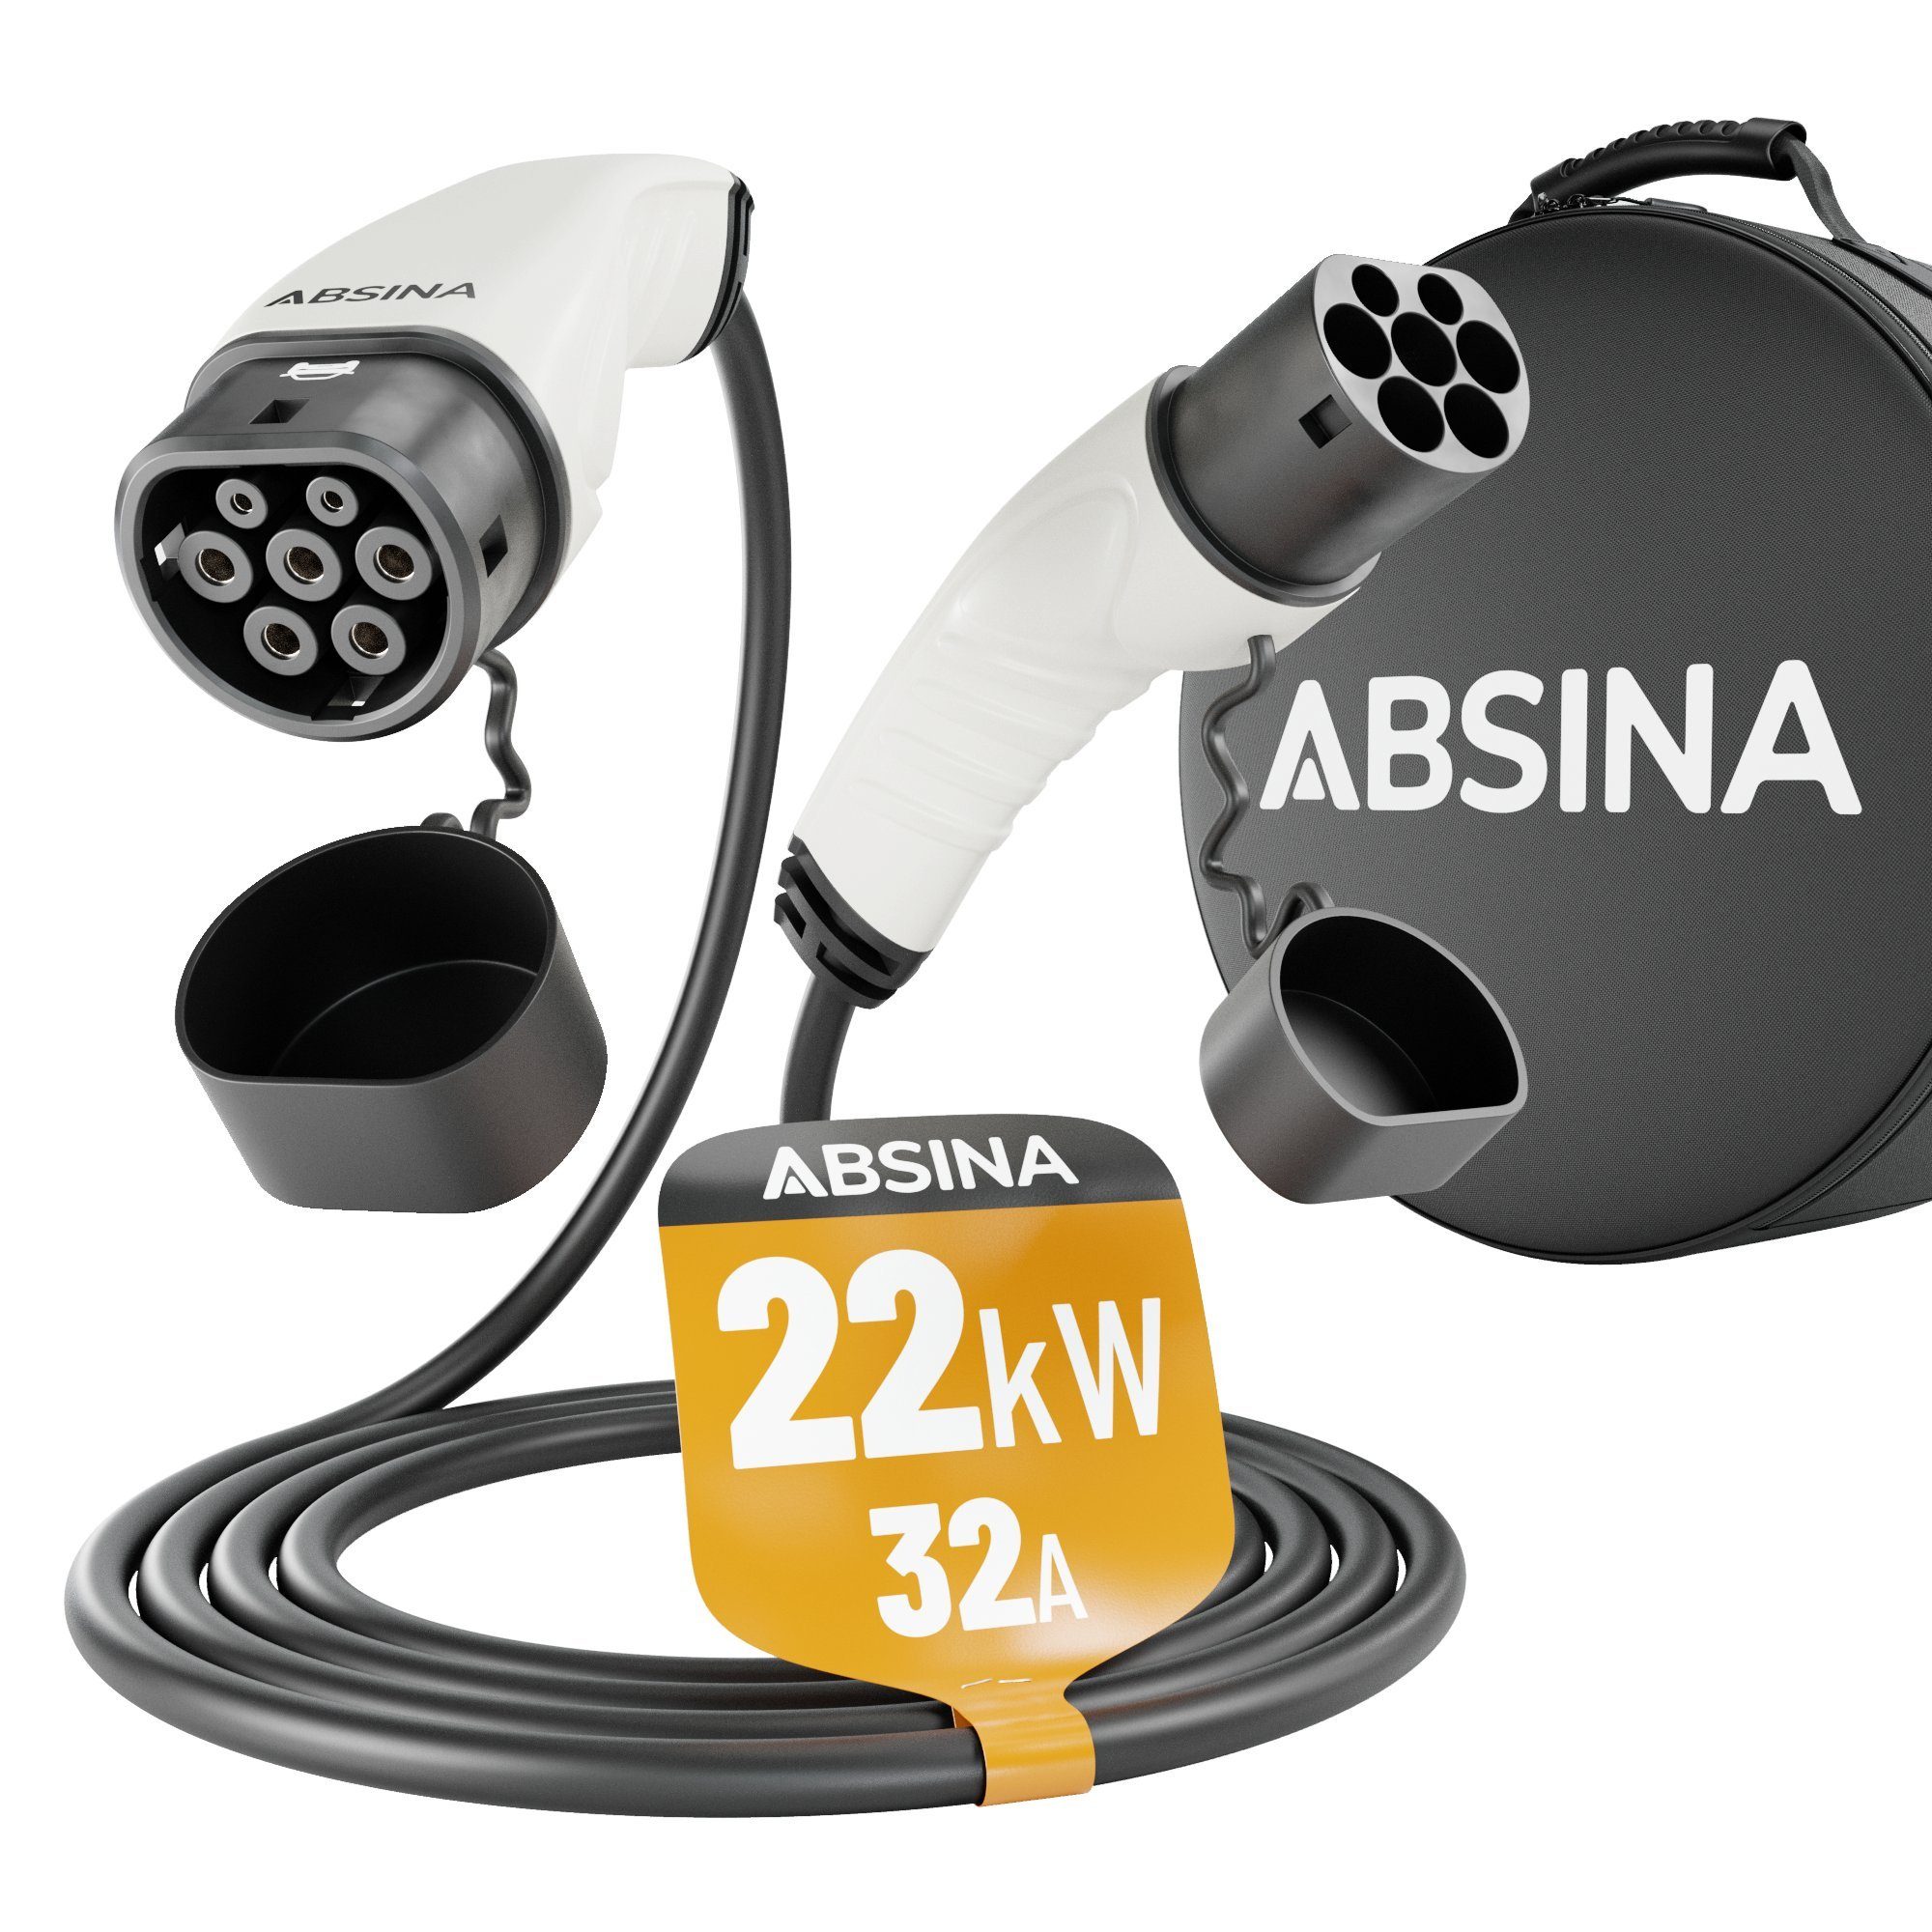 ABSINA Typ 2 Ladekabel Elektroauto 22 kW 5 Meter Typ2 Elektrofahrzeug Ladekabel 3 phasig mit IP55 Typ 2 Kabel zum Laden für Hybrid & E Auto an Ladesäule IEC62196-2 32A